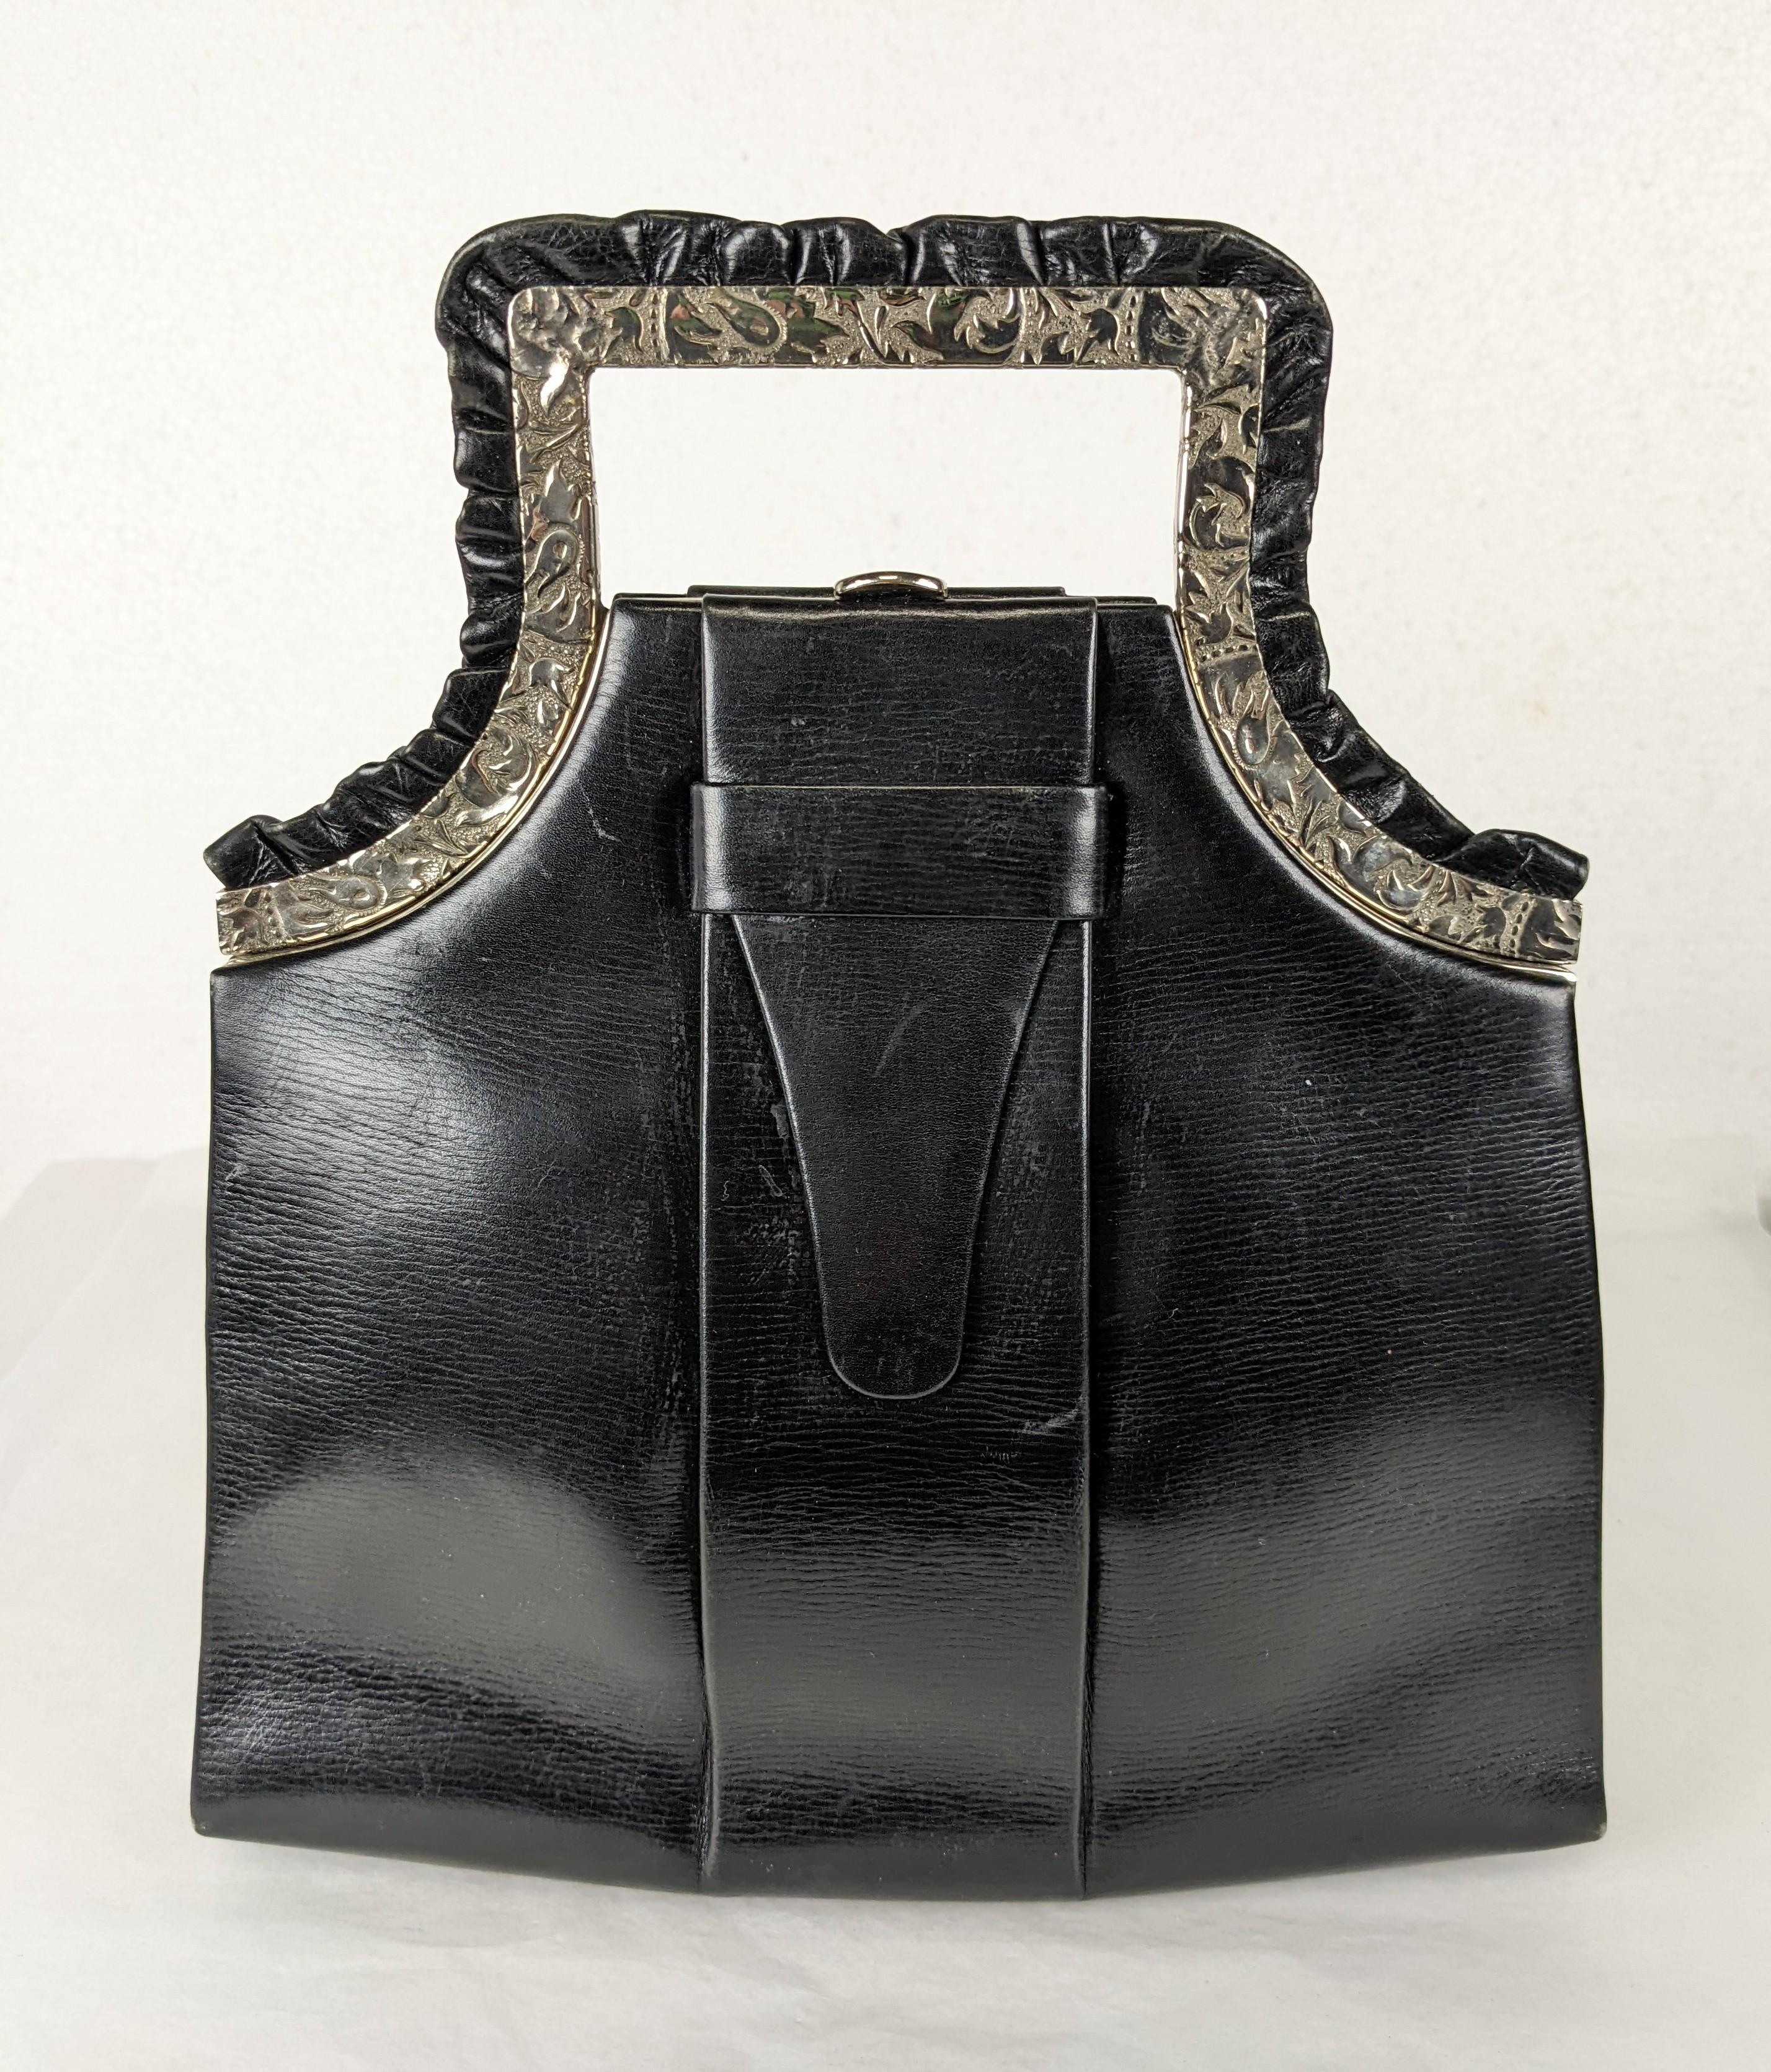 Erstaunliche Art Deco Black Calf Top Handle Bag mit kunstvoll ziseliertem Chromrahmen und Lederrüschen-Akzenten. Unglaubliches, neuartiges Design.  1930er Jahre, USA. 